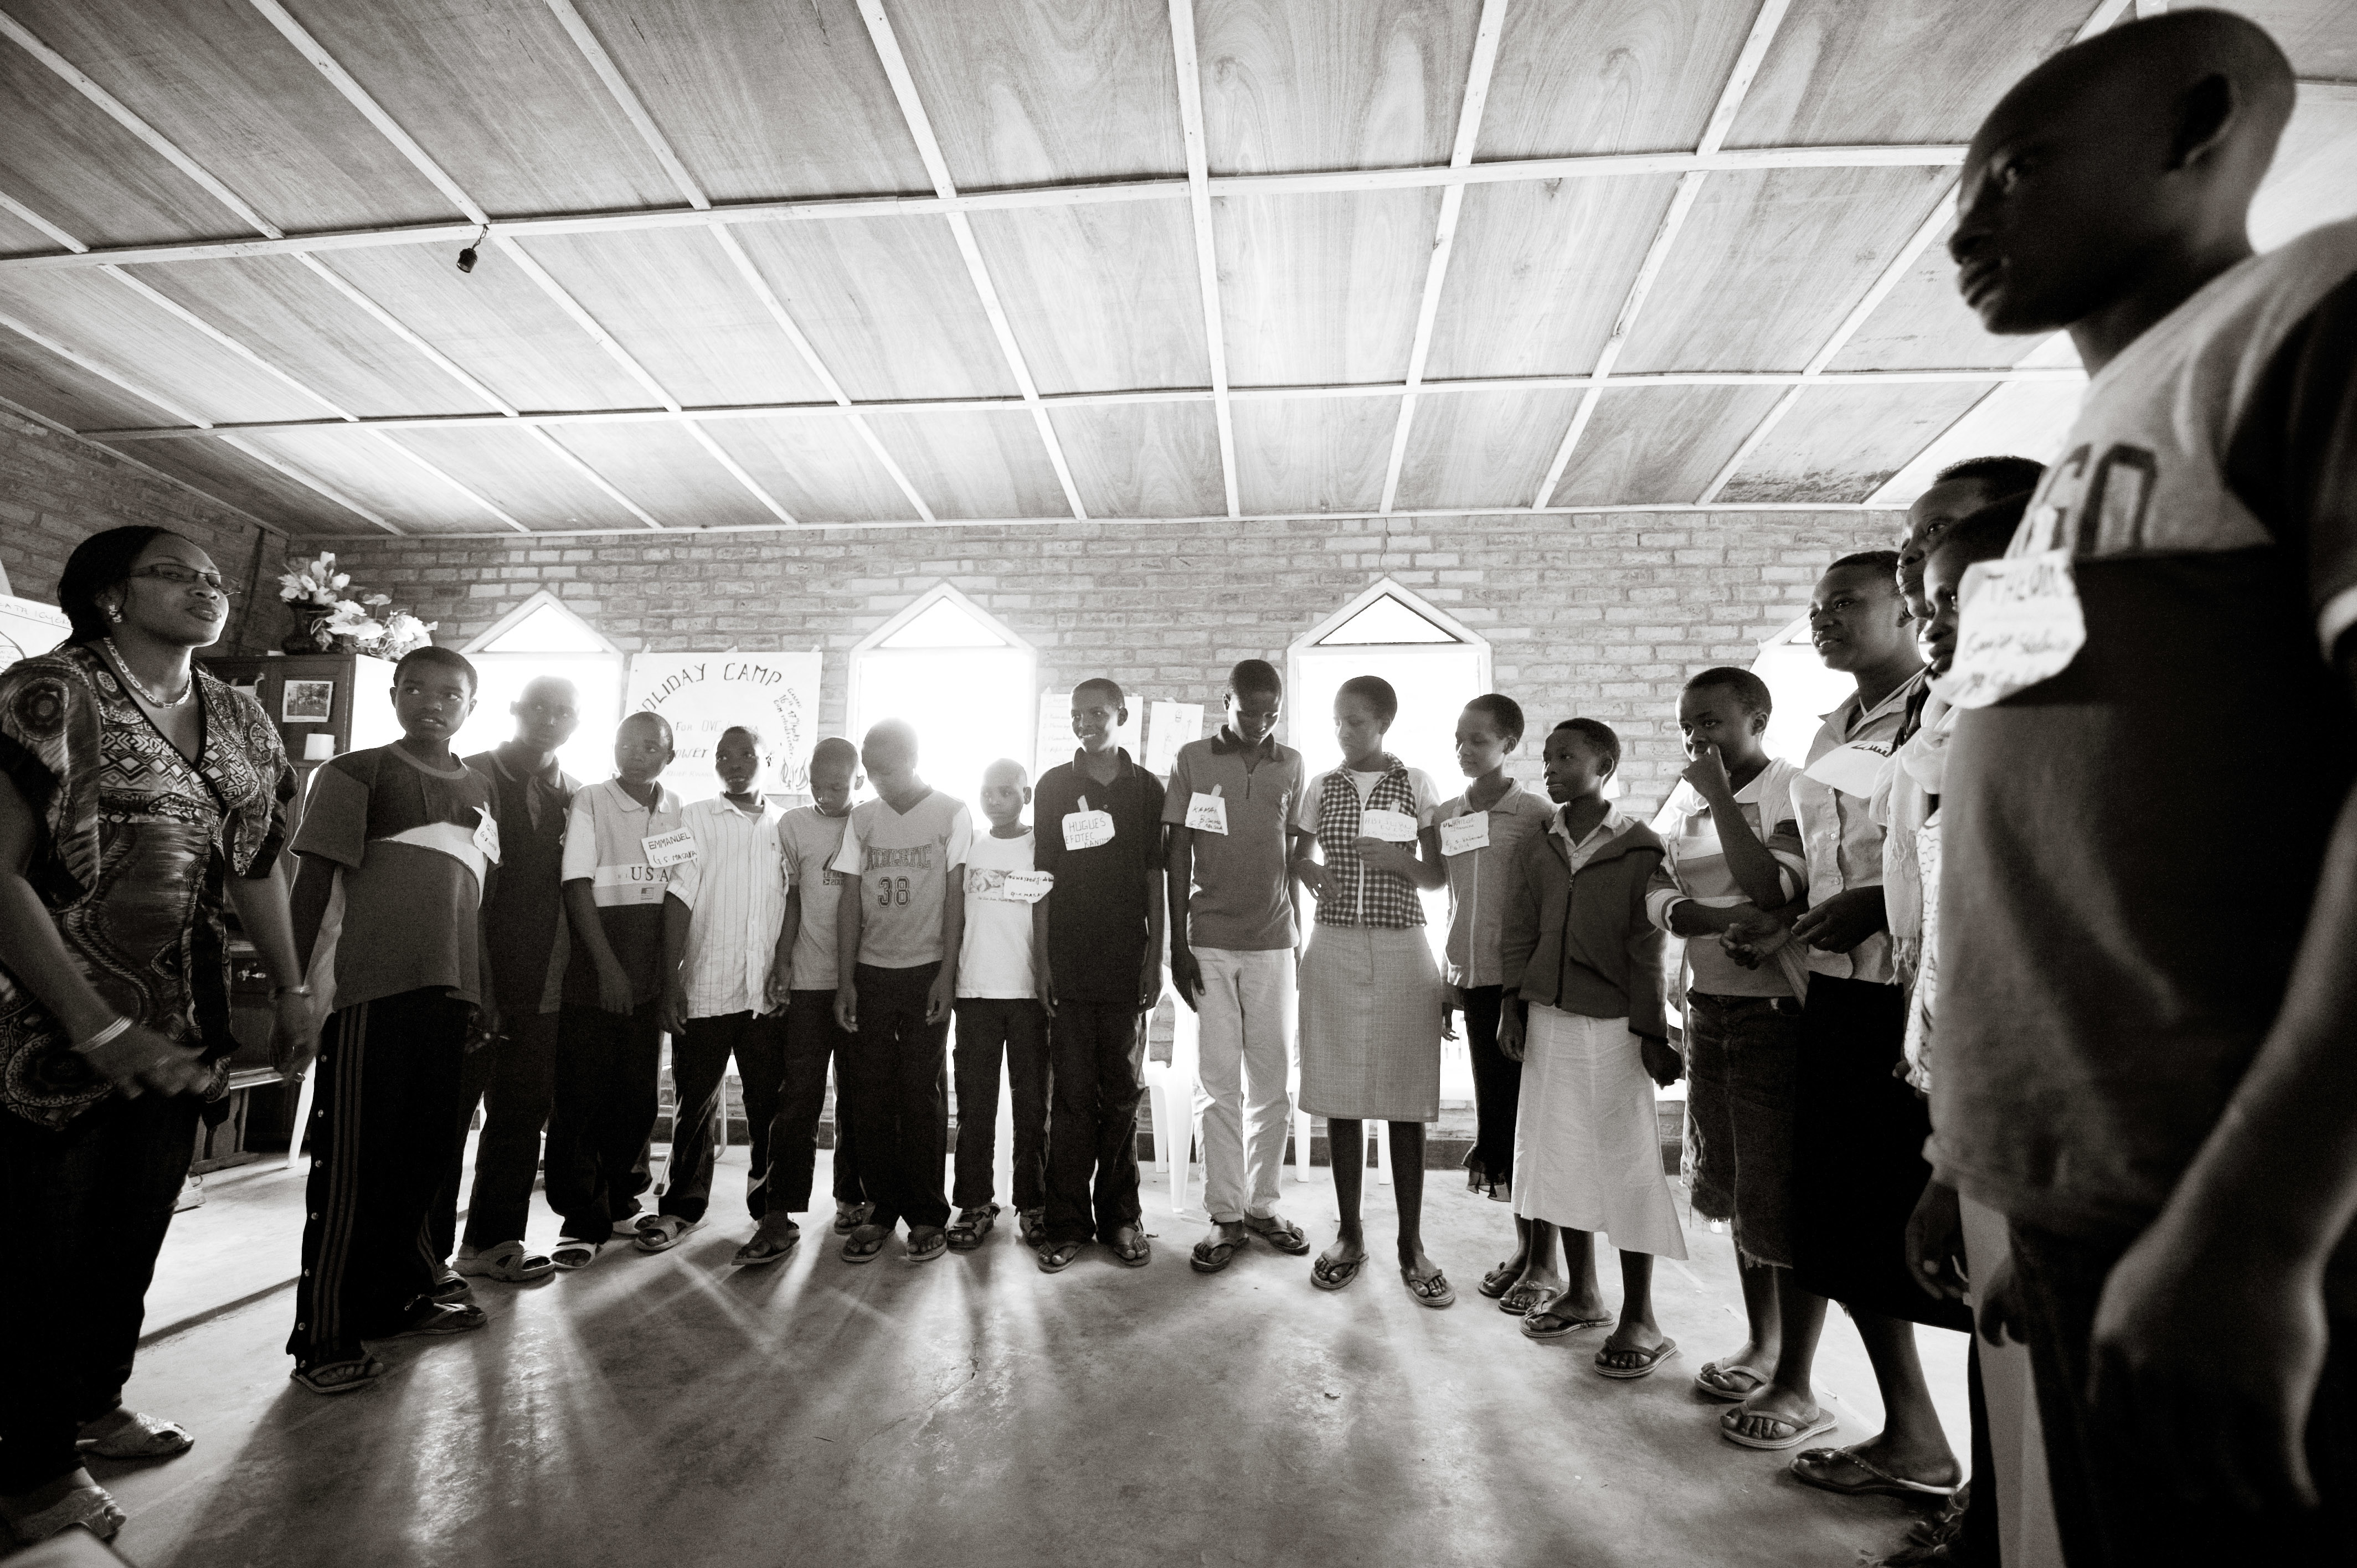 Project #199 | Community Development Through Church Unity in Rwanda